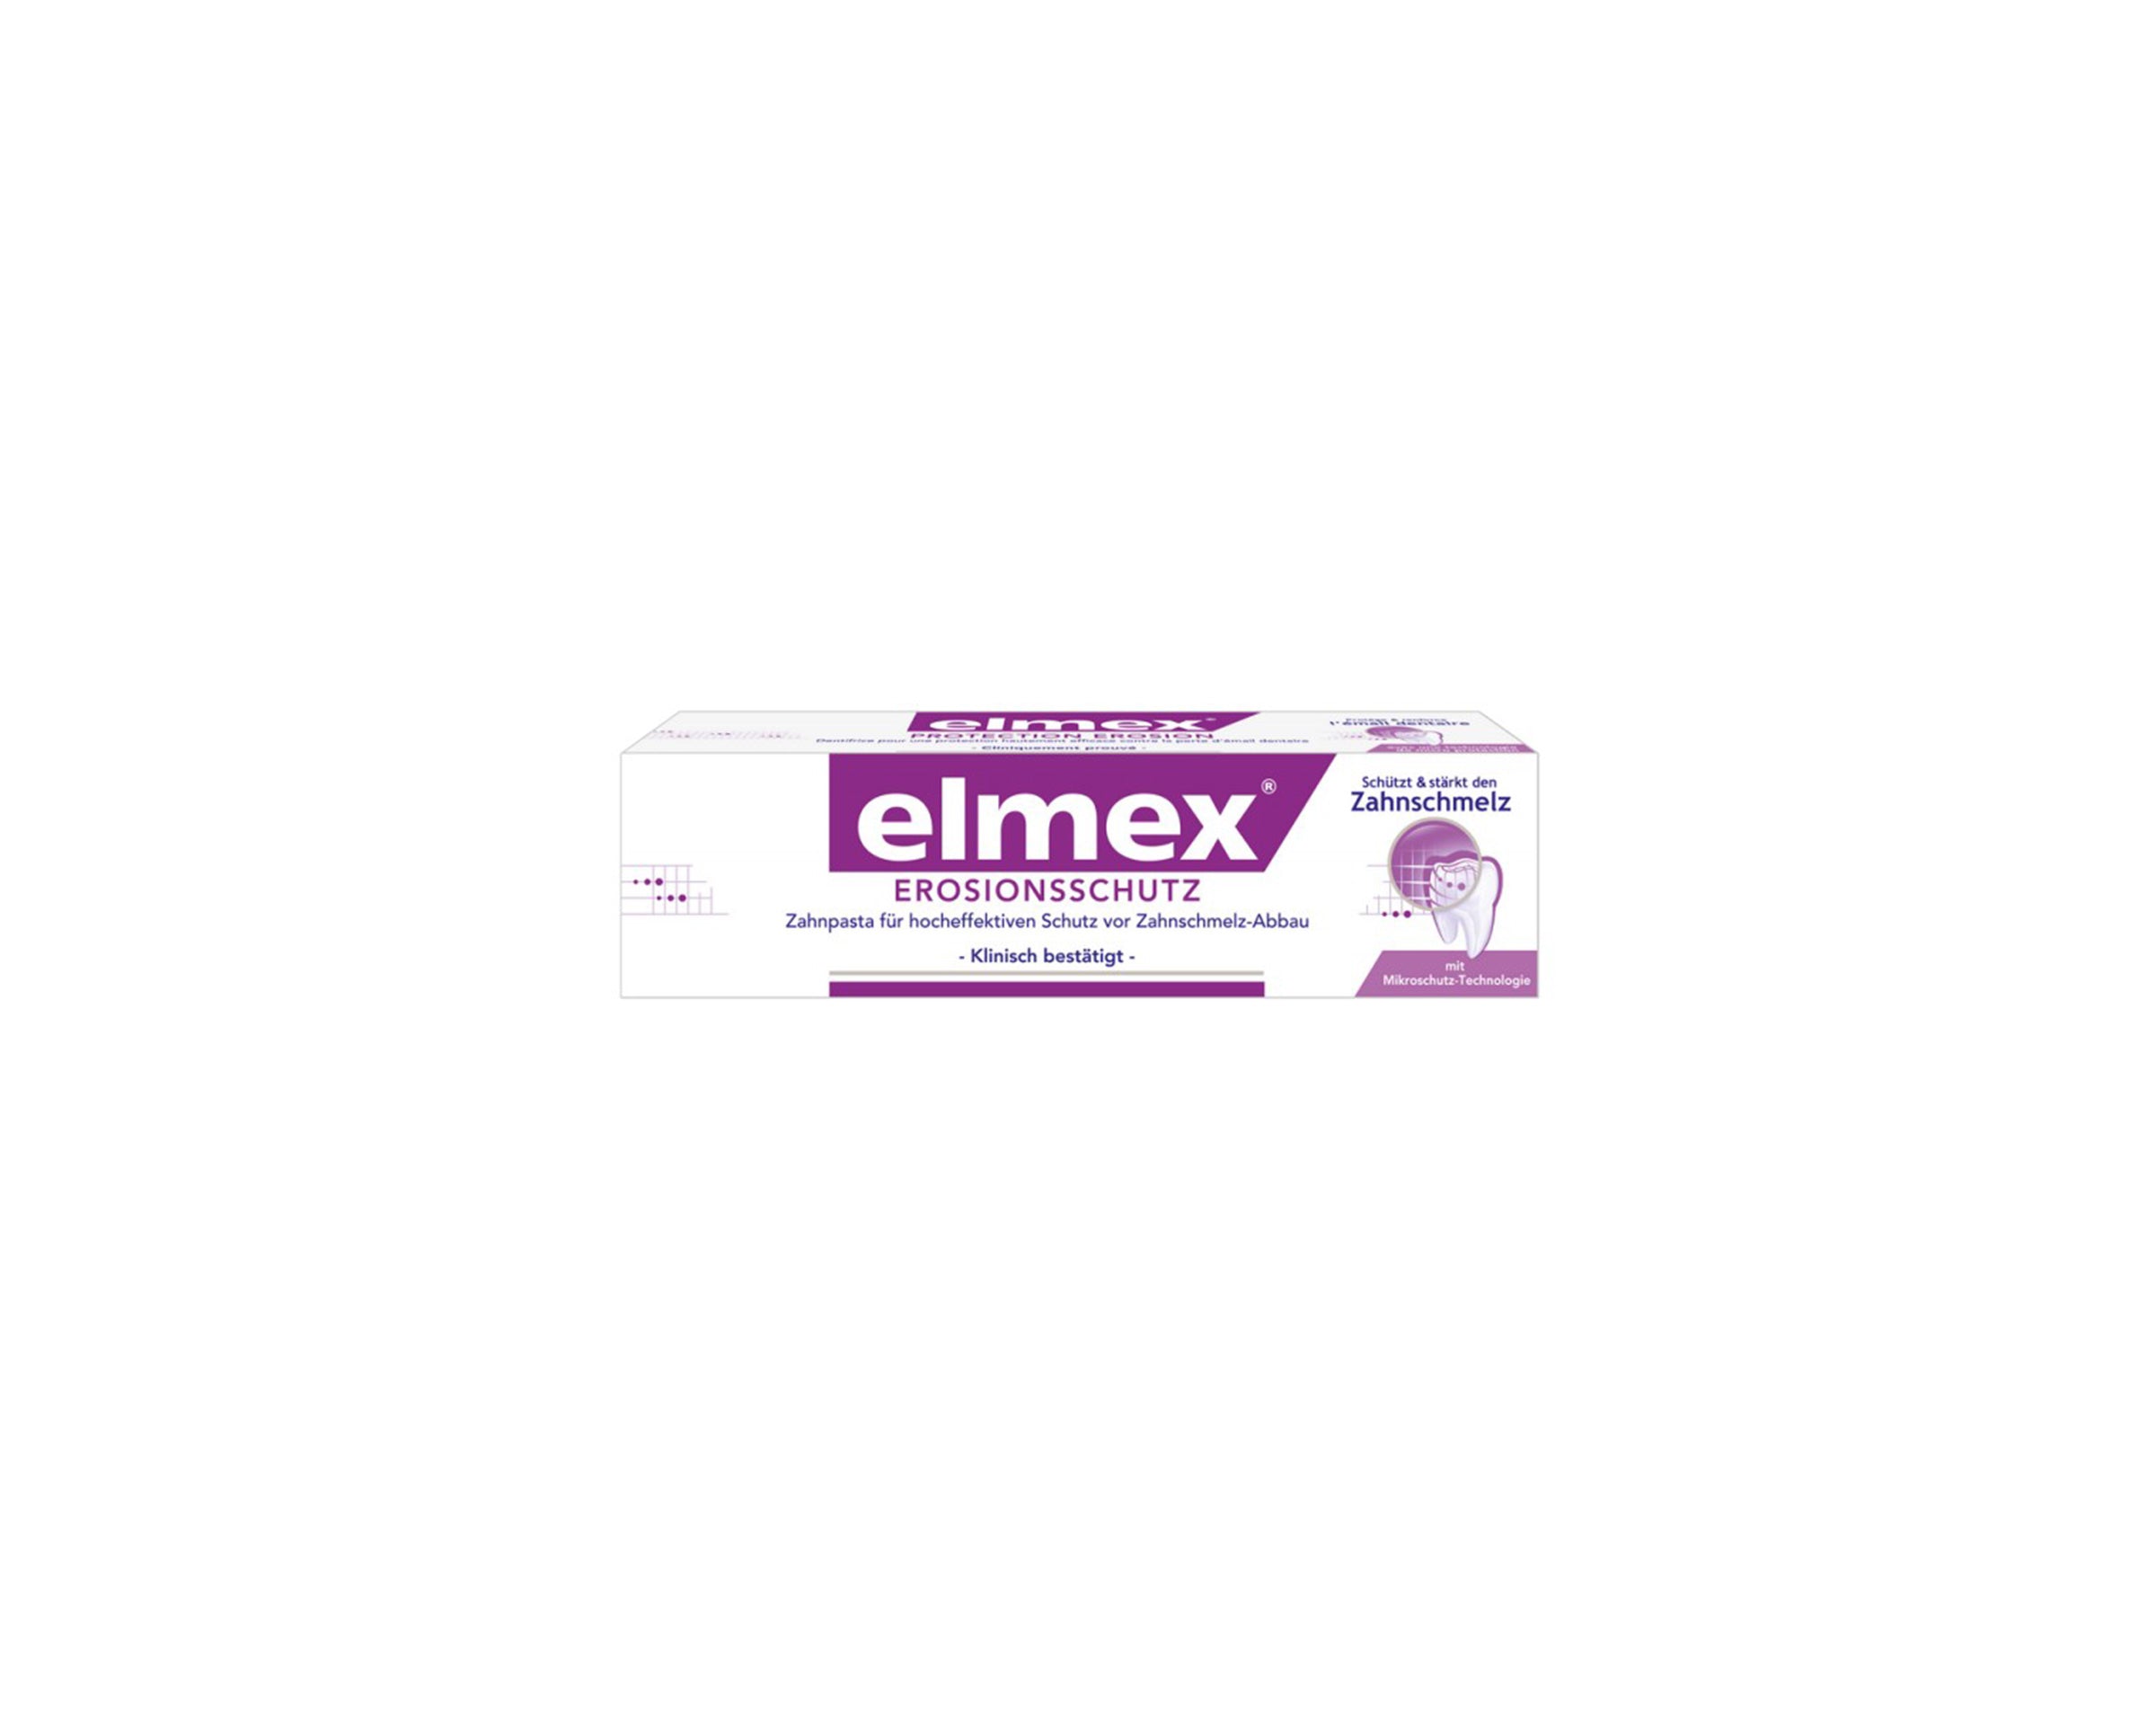 elmex® Erosionsschutz Zahnpasta